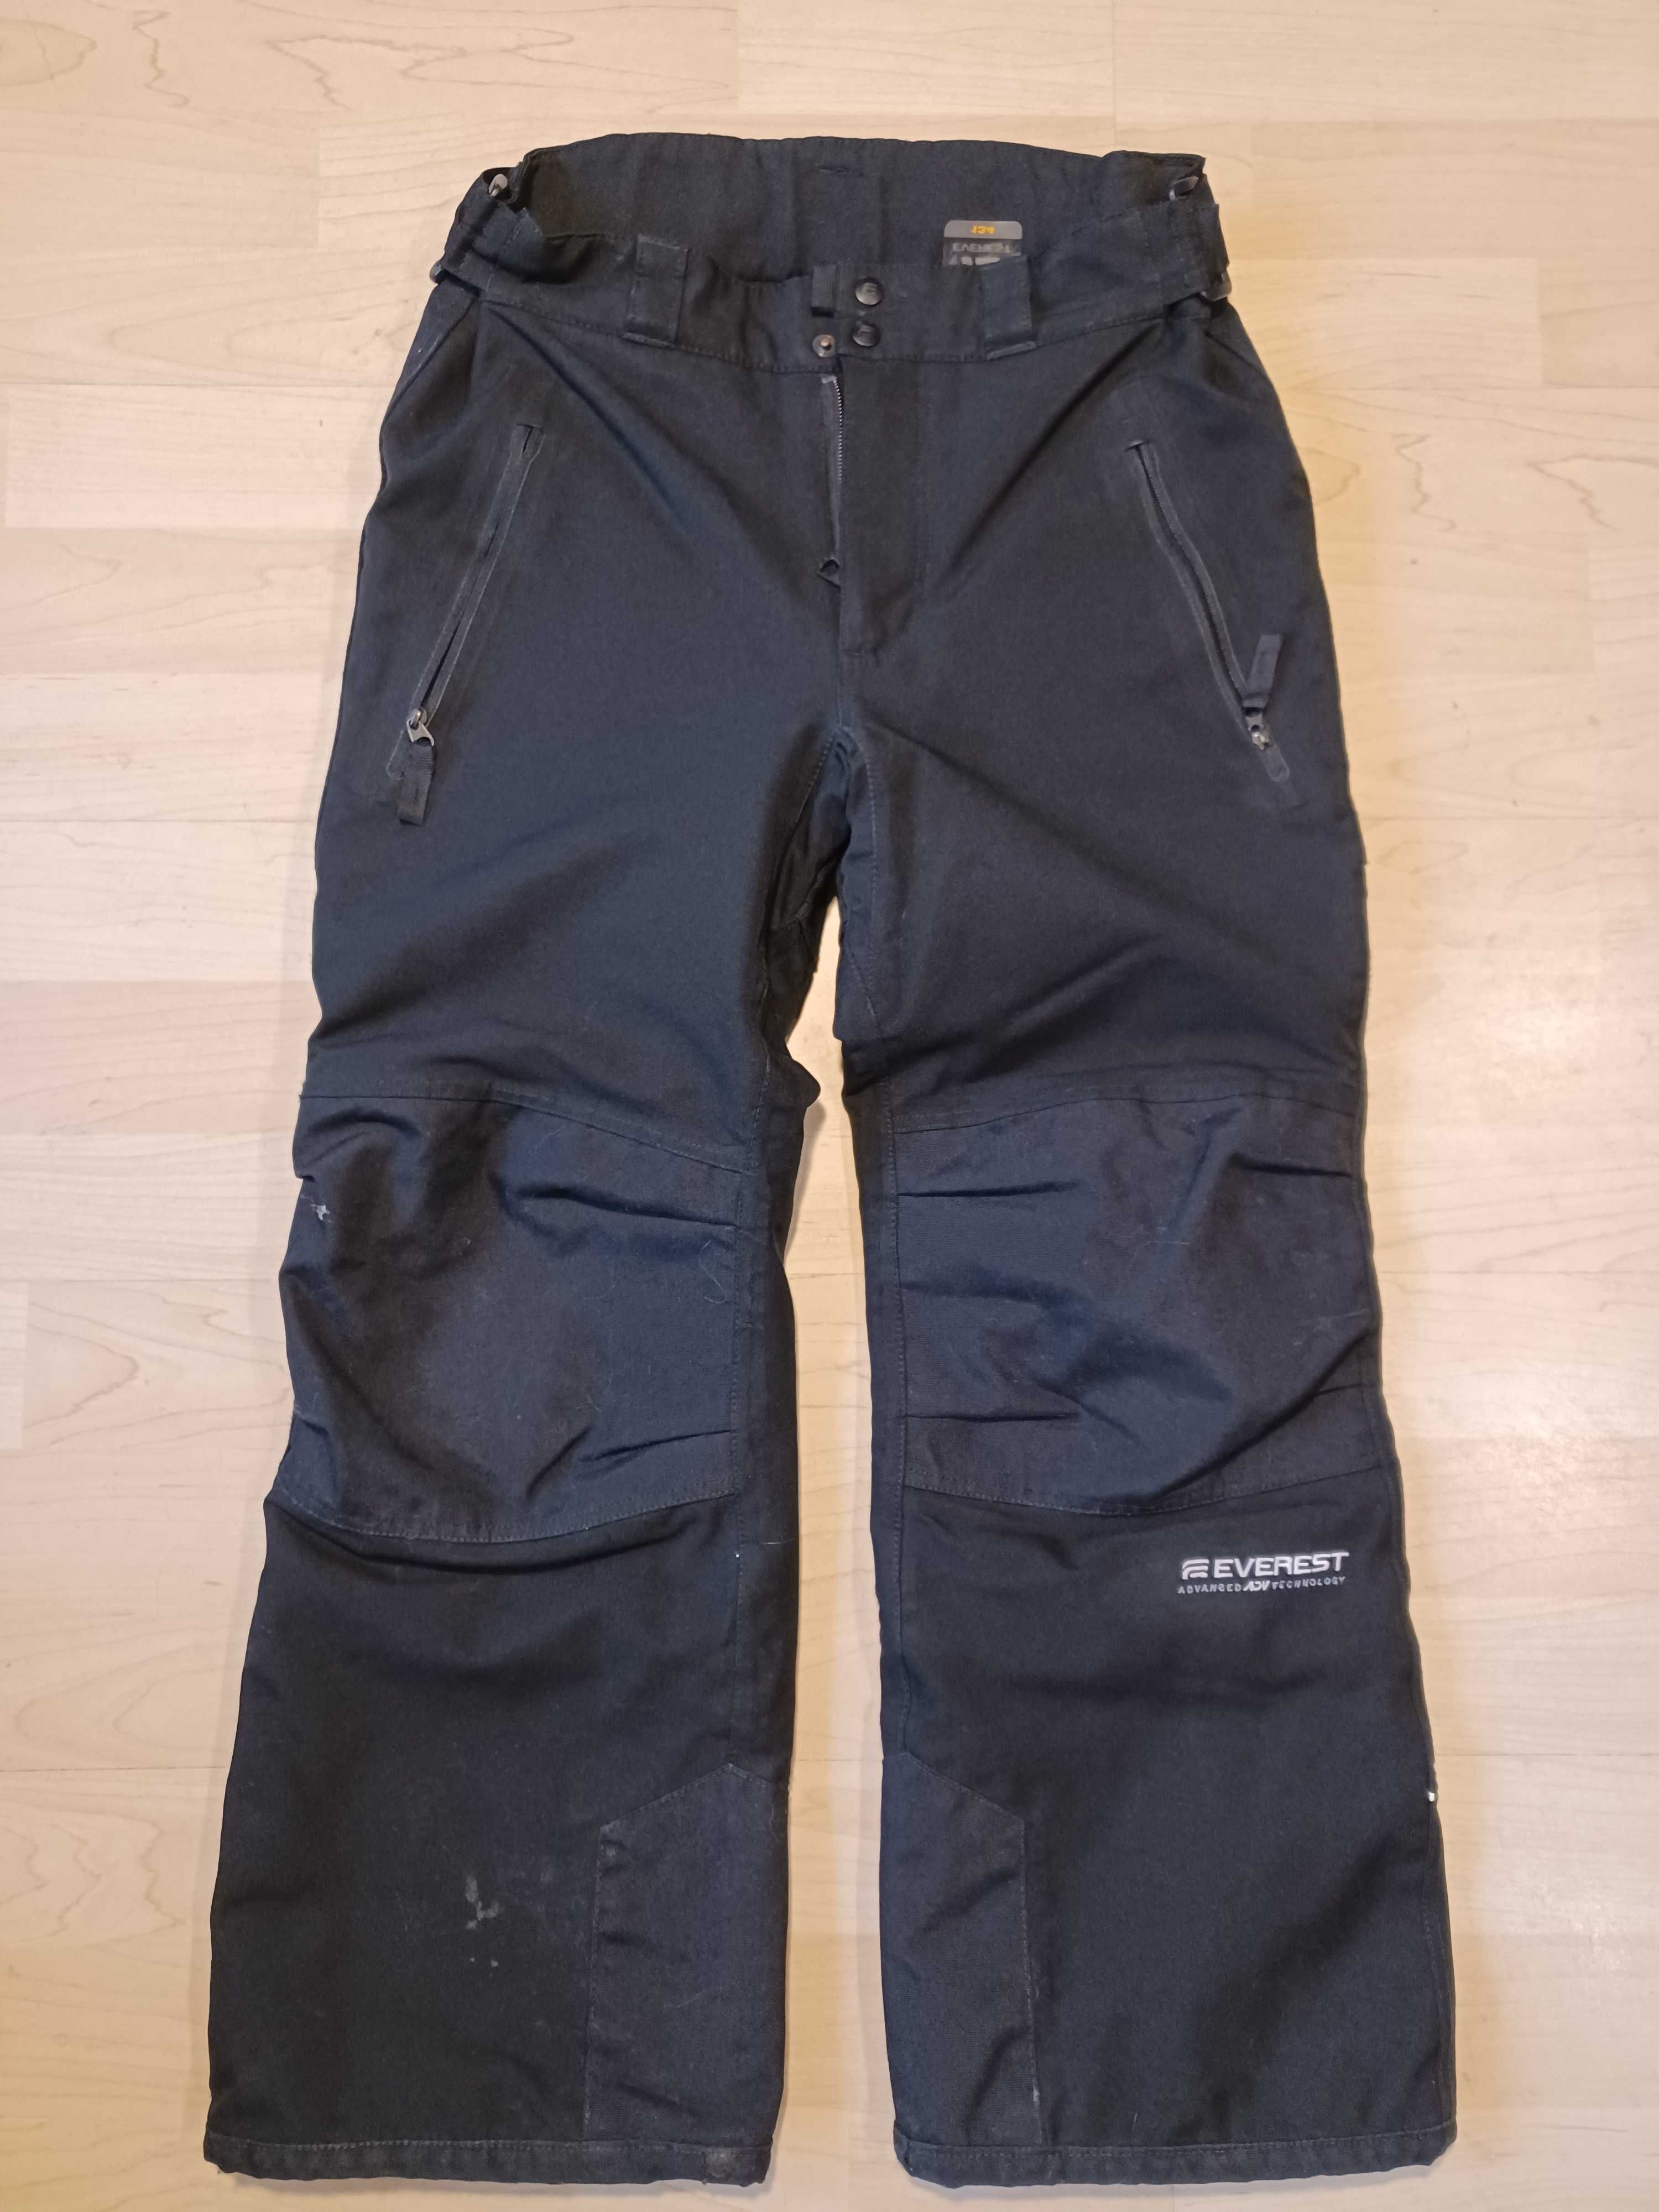 Spodnie narciarskie snowboardowe Everest jak nowe czarne 134 cm